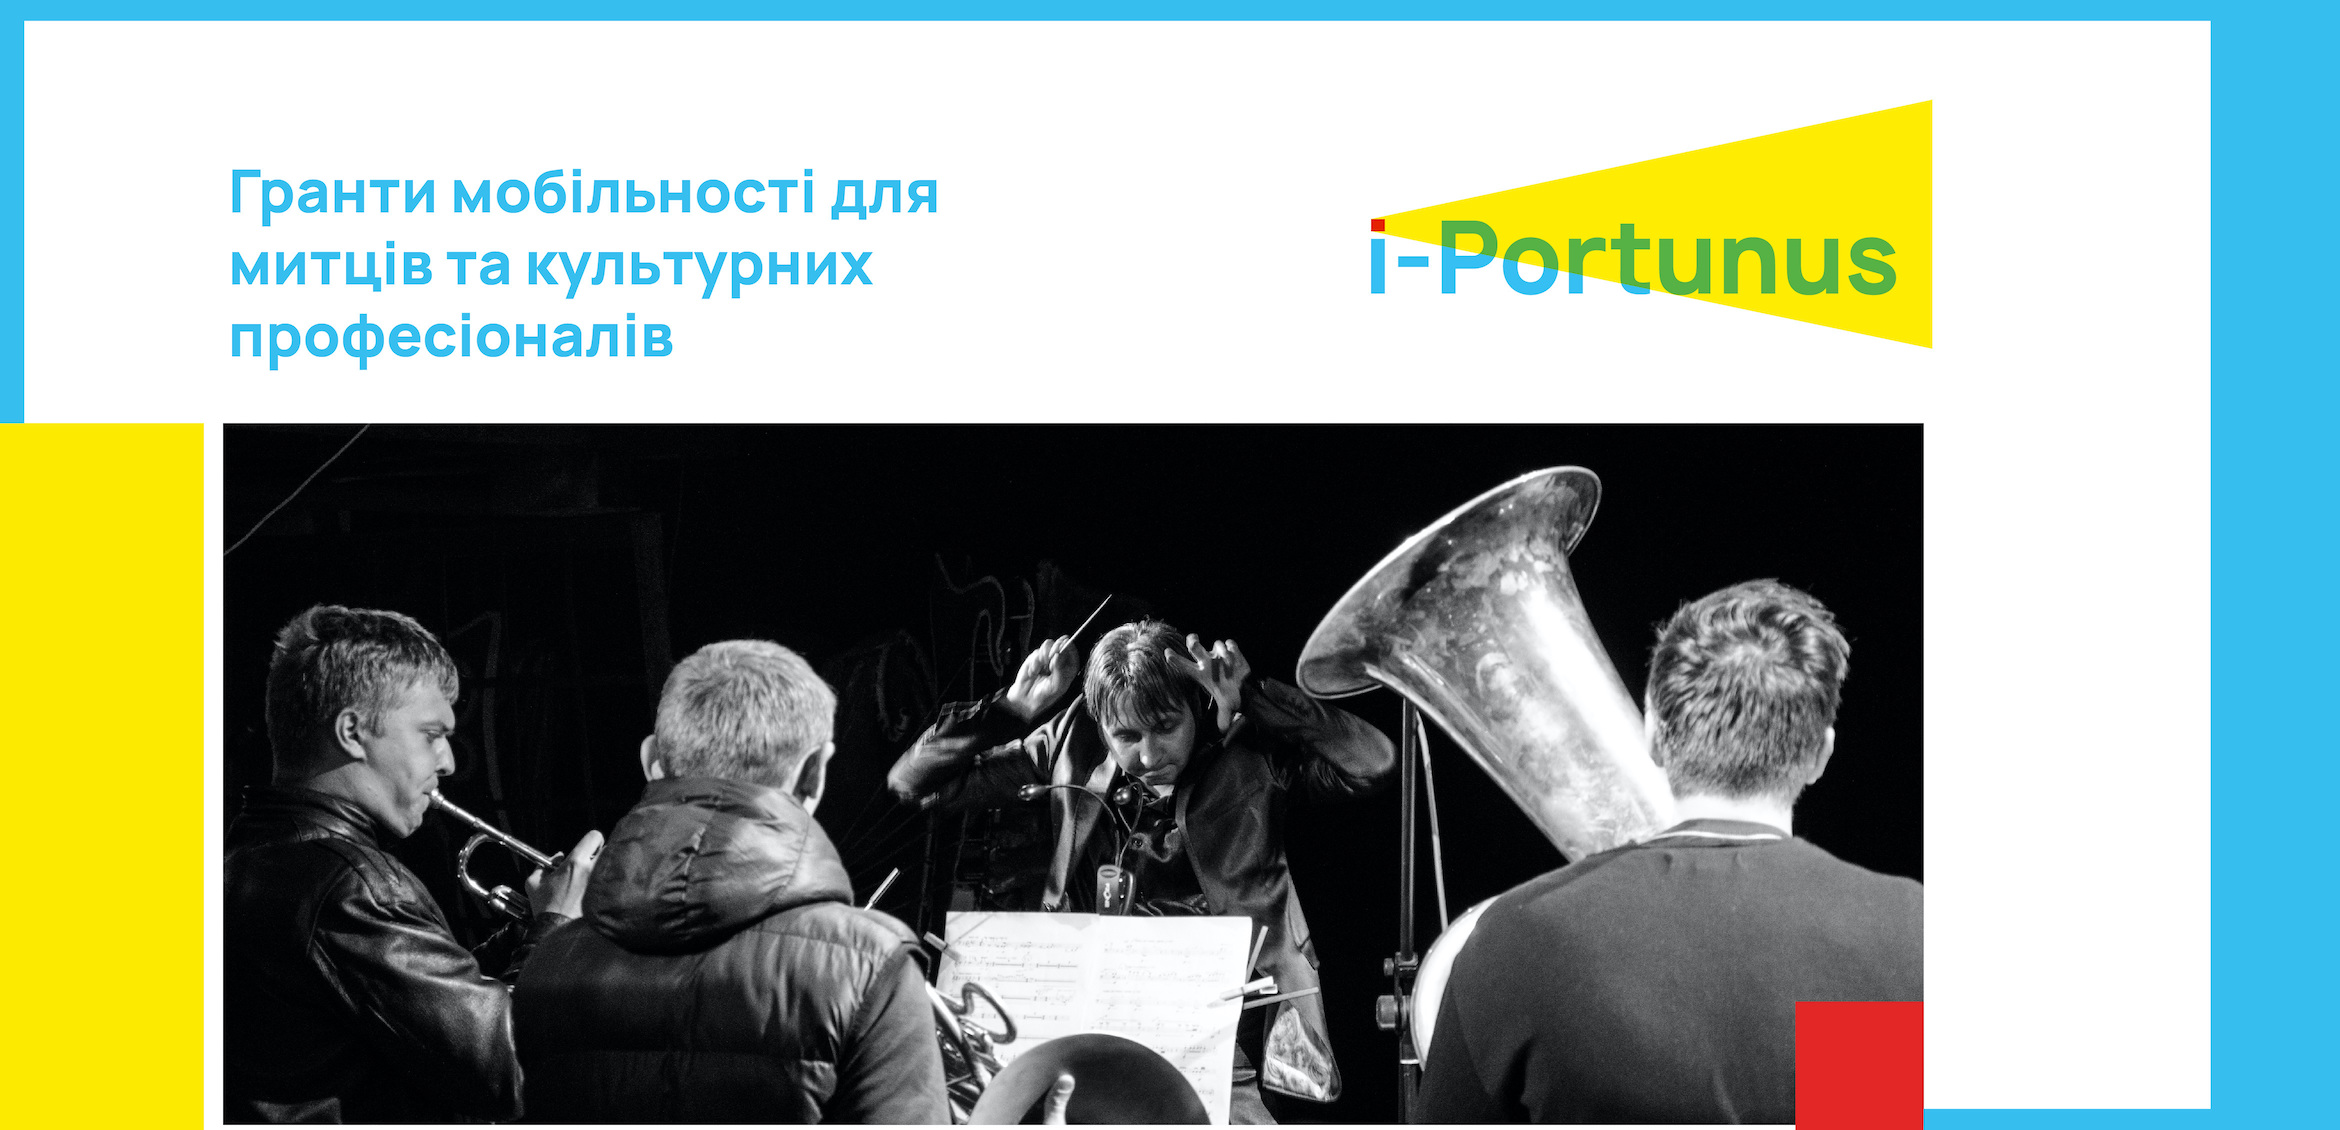 I-Portunus 2020-22. Програма мобільності європейського союзу для художників та культурних професіоналів